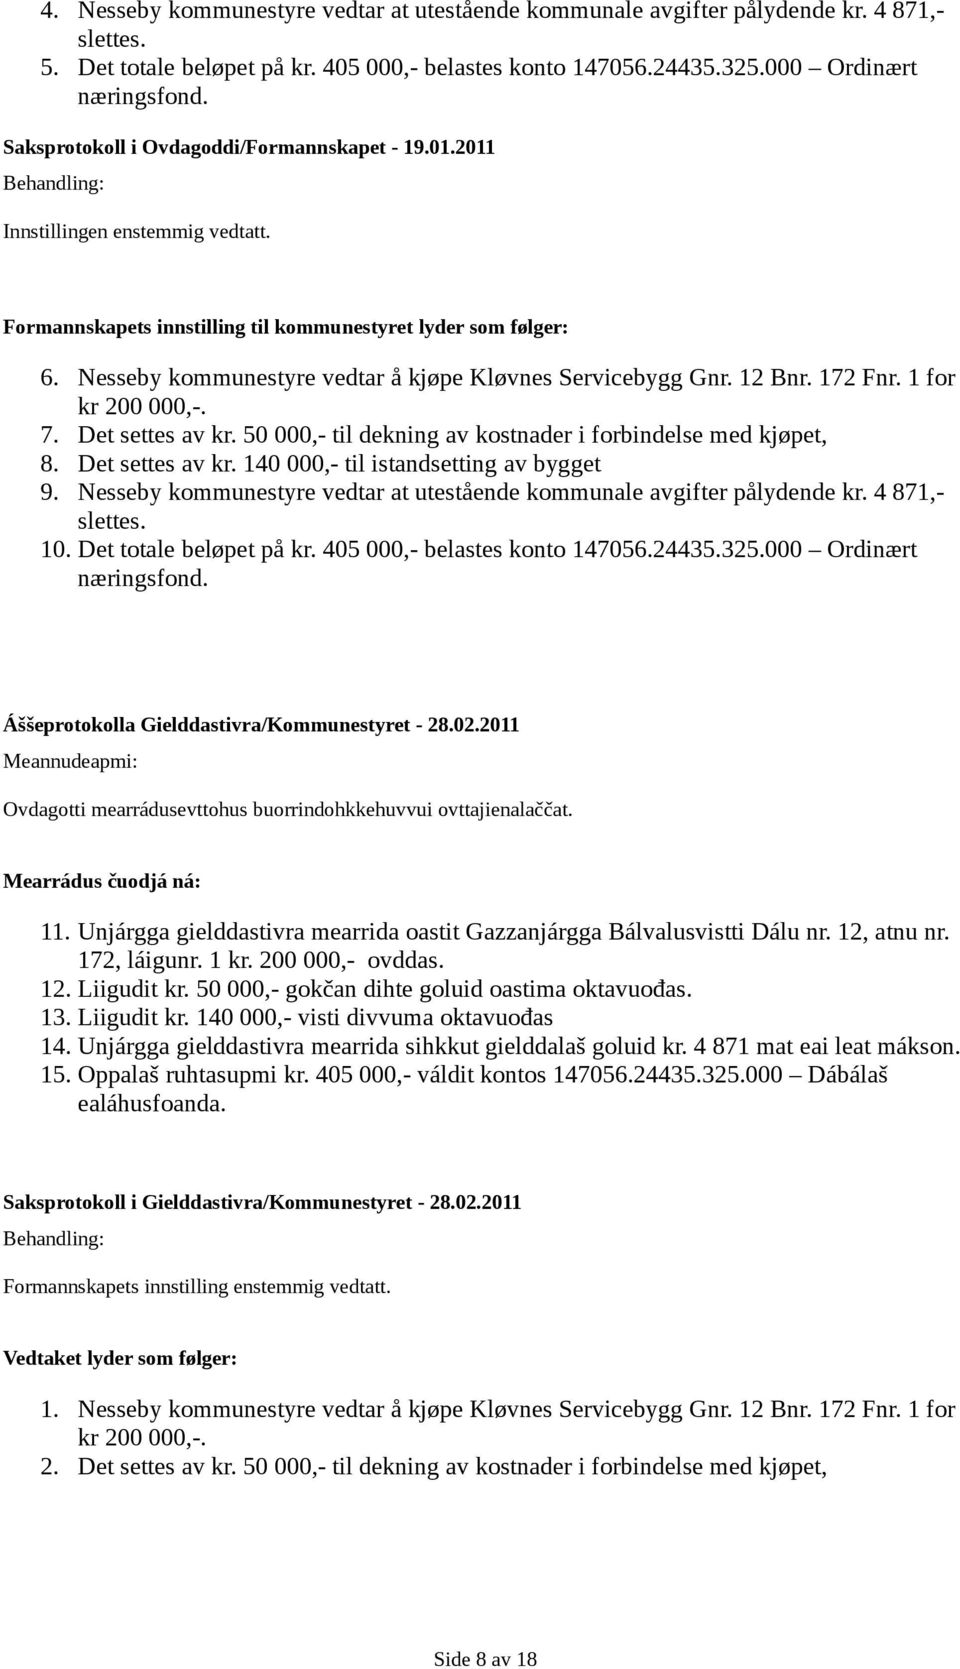 Nesseby kommunestyre vedtar å kjøpe Kløvnes Servicebygg Gnr. 12 Bnr. 172 Fnr. 1 for kr 200 000,-. 7. Det settes av kr. 50 000,- til dekning av kostnader i forbindelse med kjøpet, 8. Det settes av kr. 140 000,- til istandsetting av bygget 9.